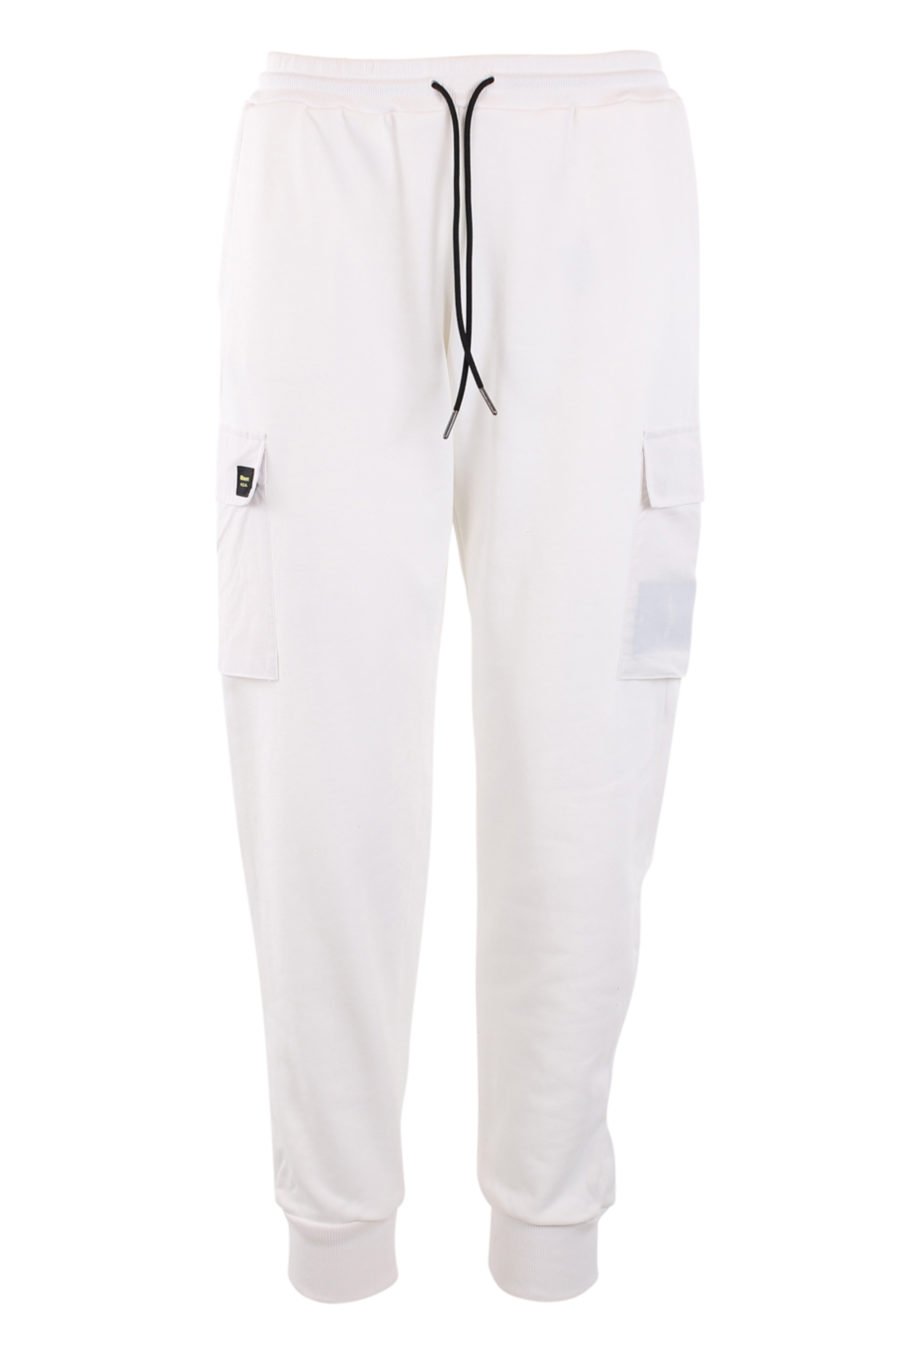 Pantalón de chándal blanco con bolsillos - IMG 0898